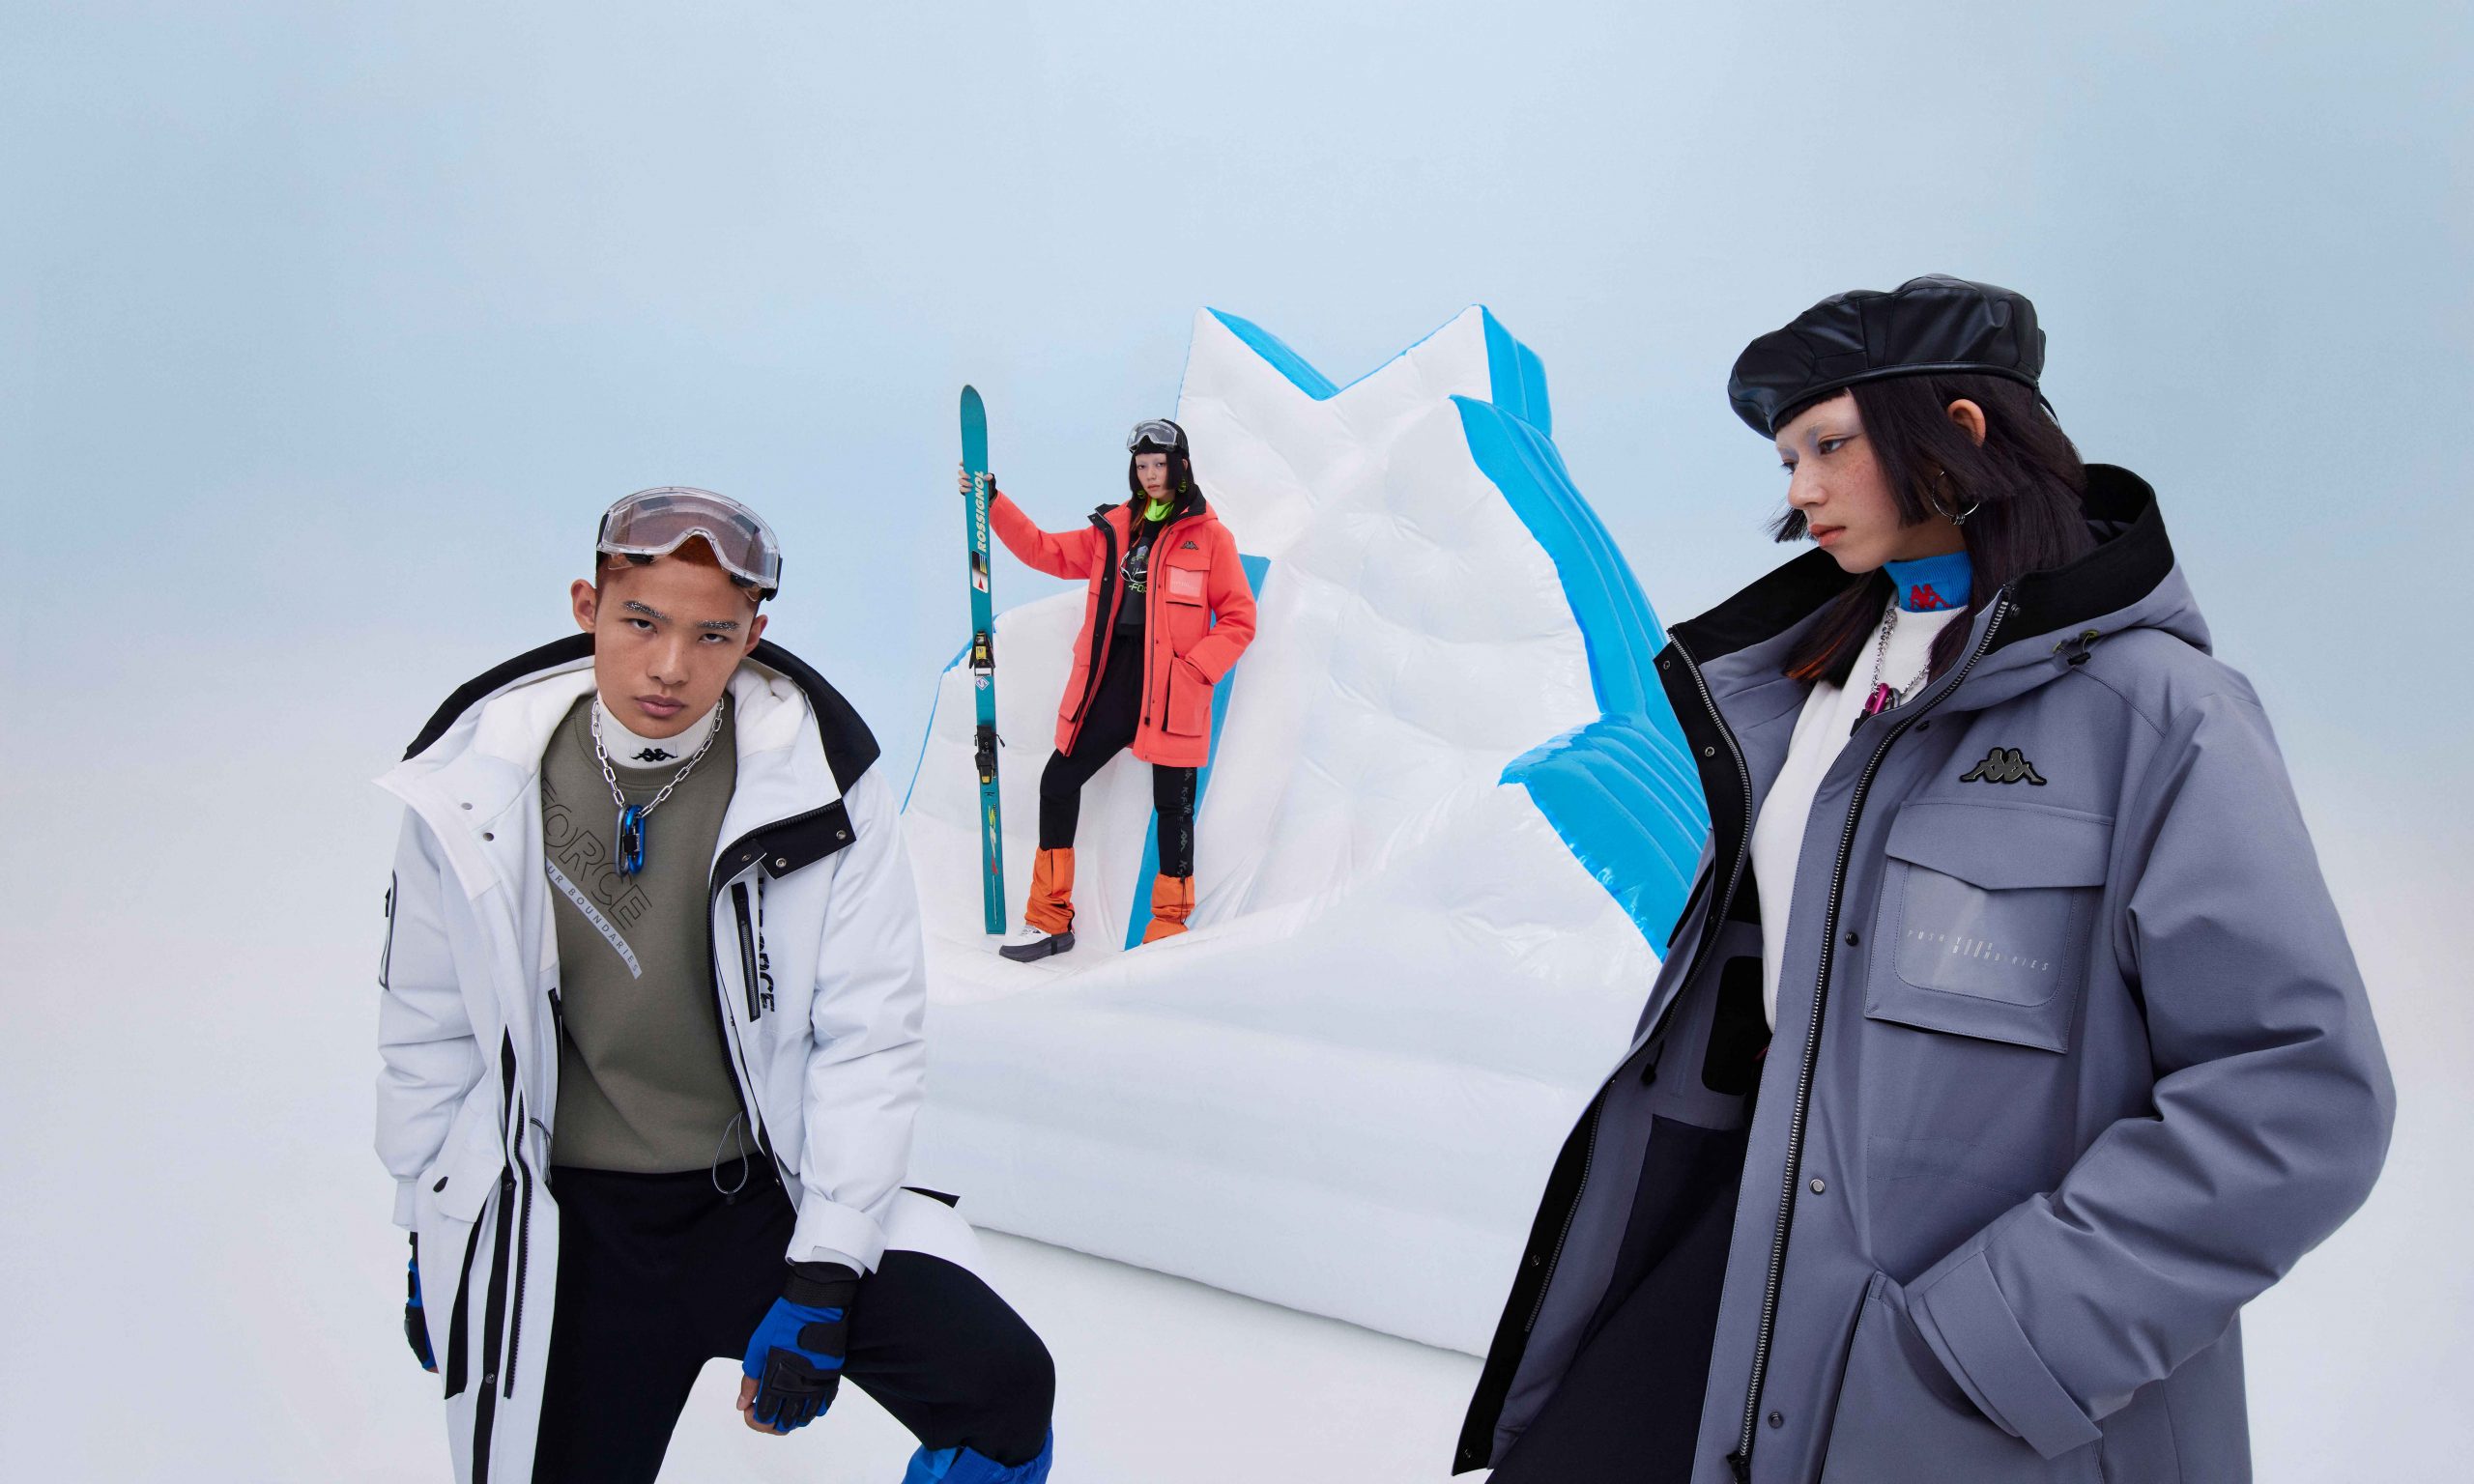 当代年轻人如何走在「雪圈时尚」最前端？